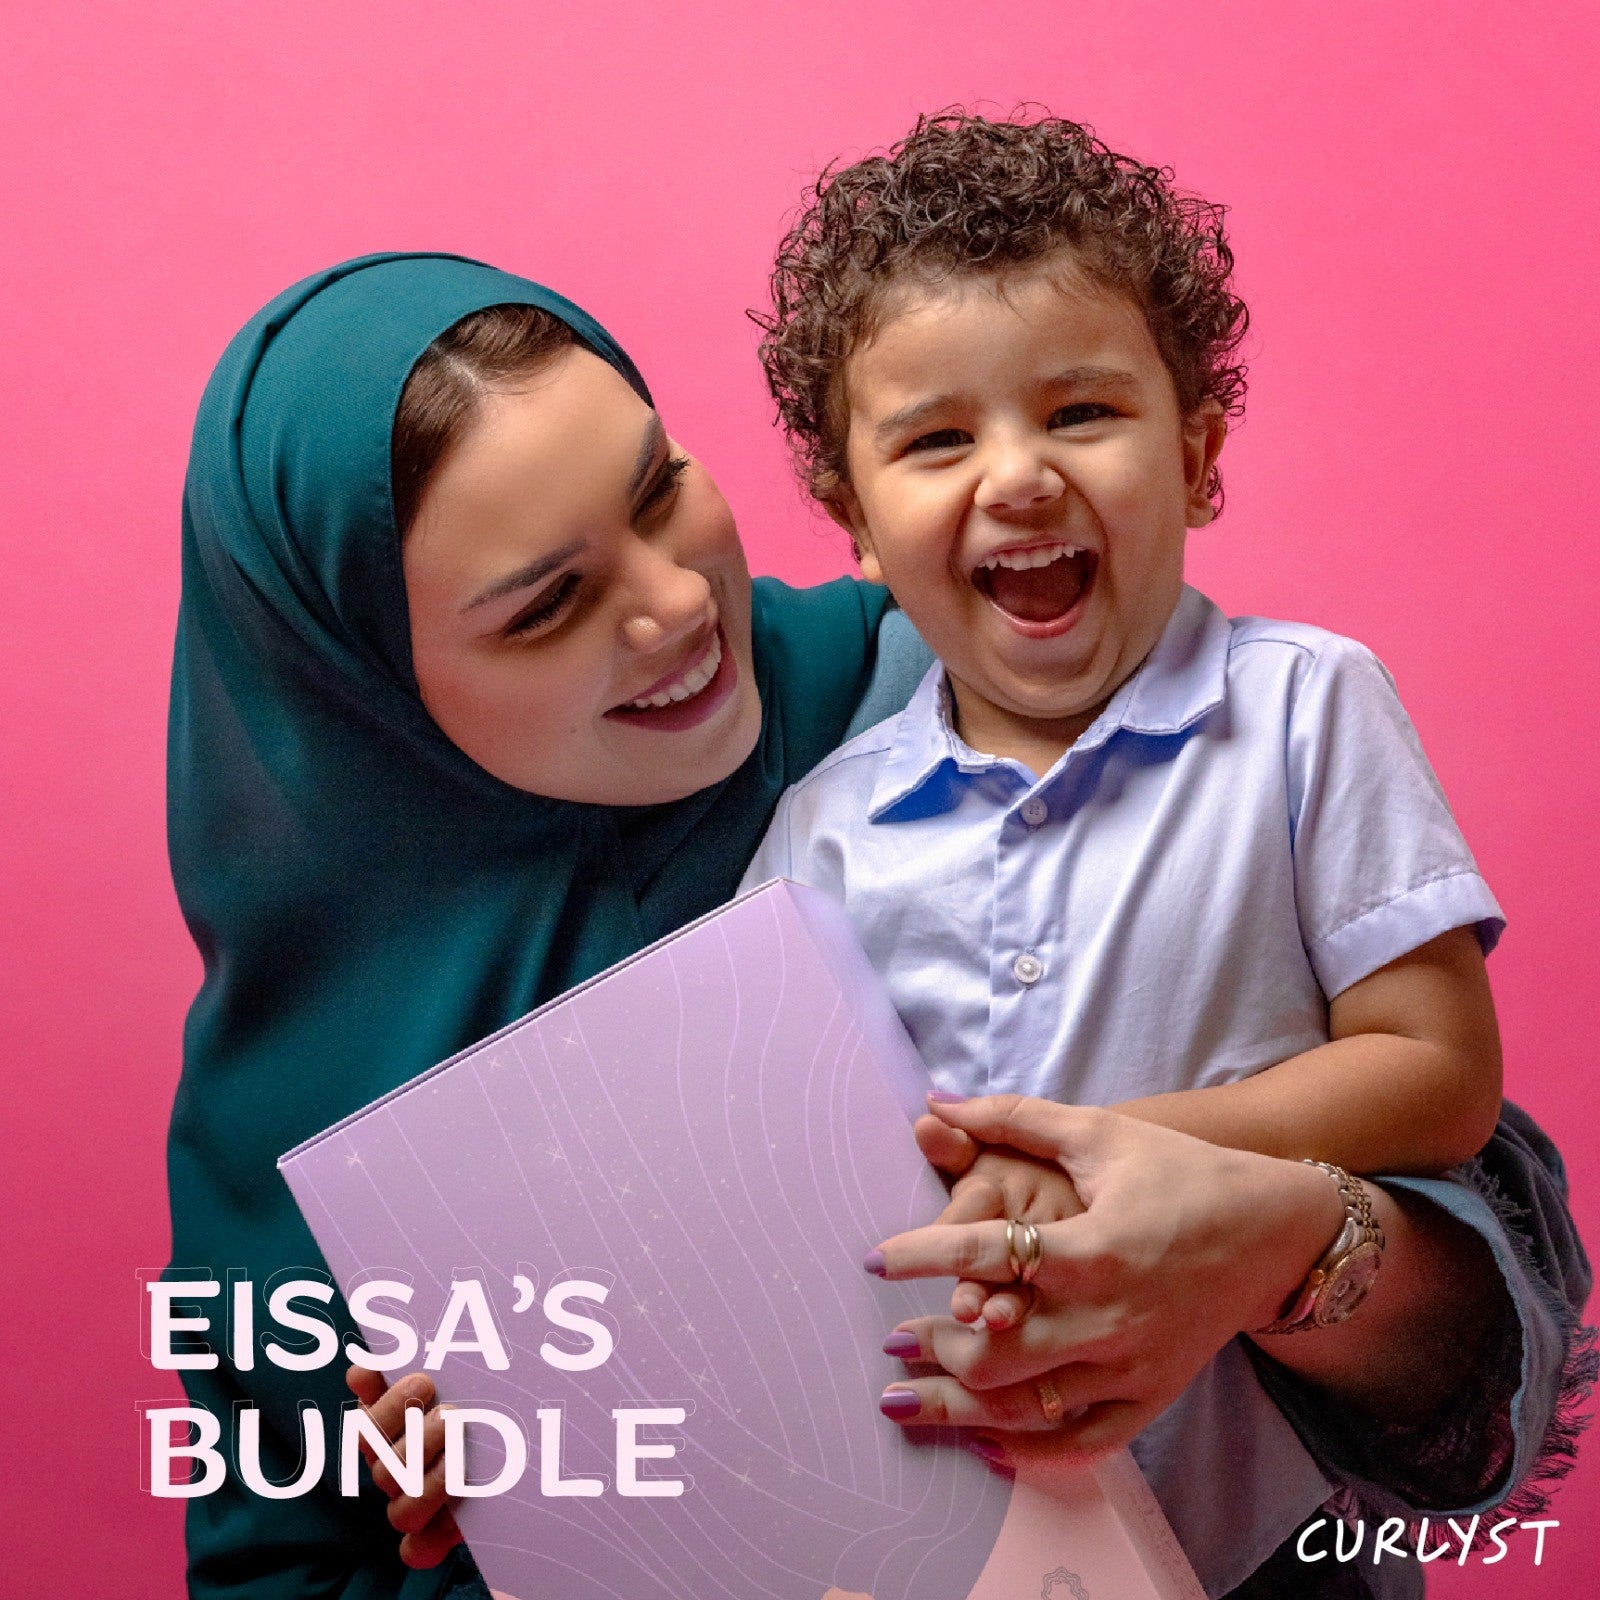 Eissa's Bundle